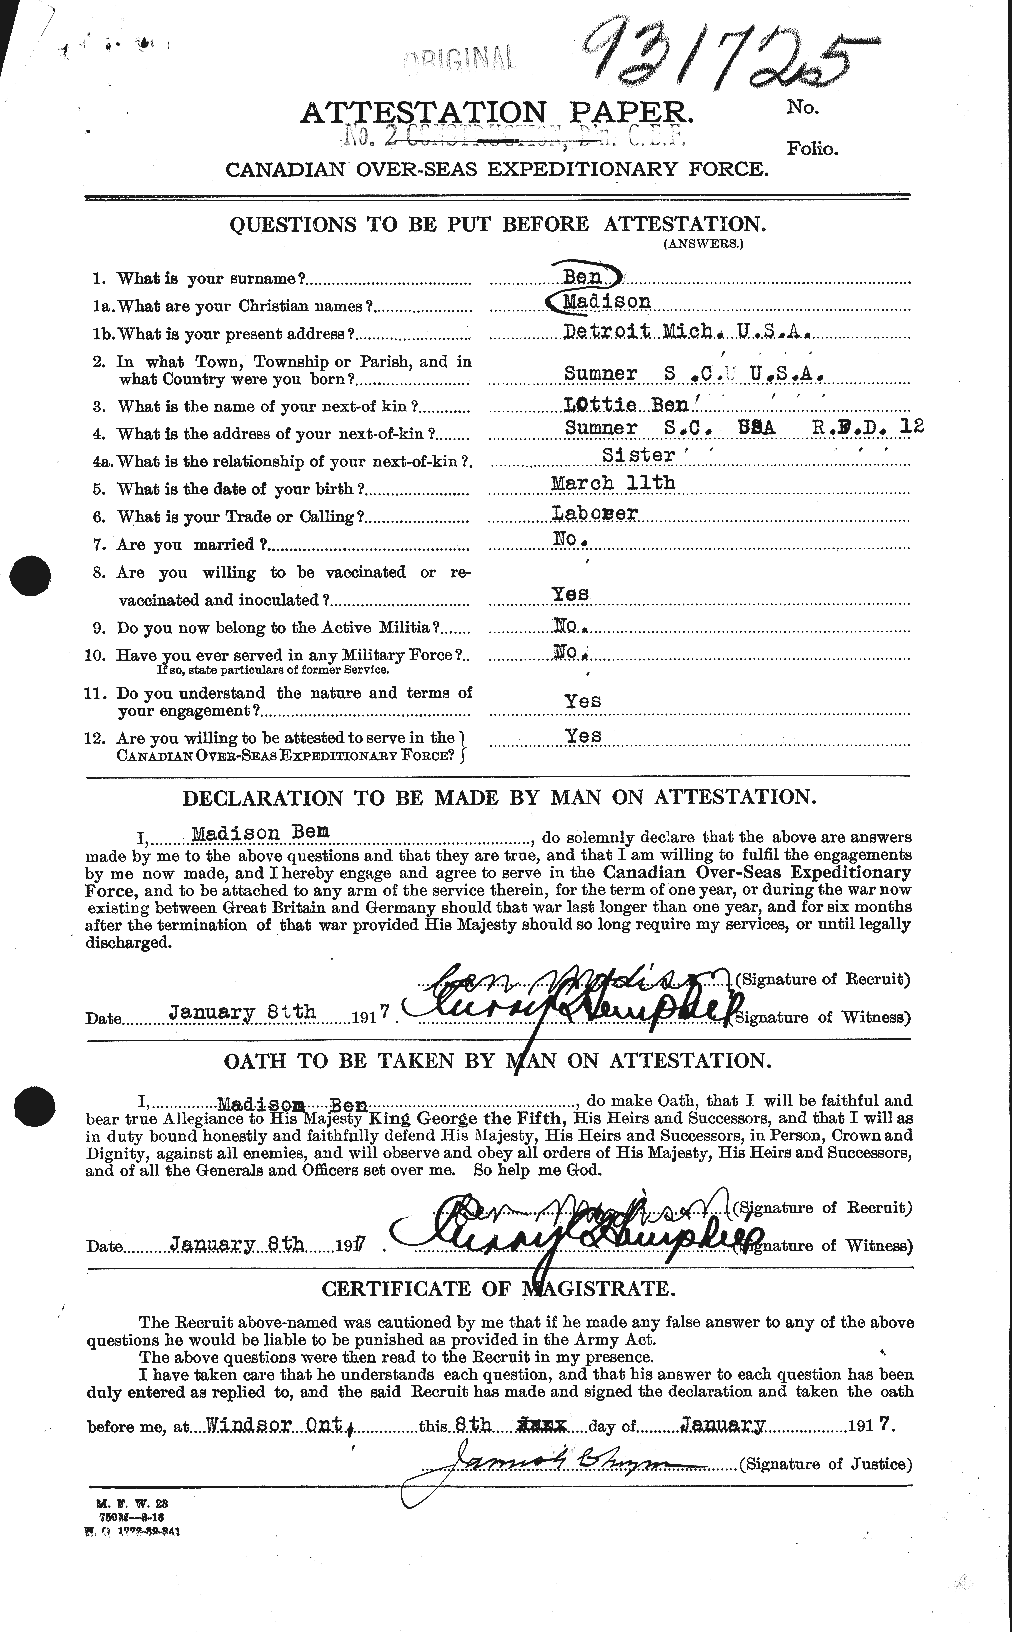 Dossiers du Personnel de la Première Guerre mondiale - CEC 476642a